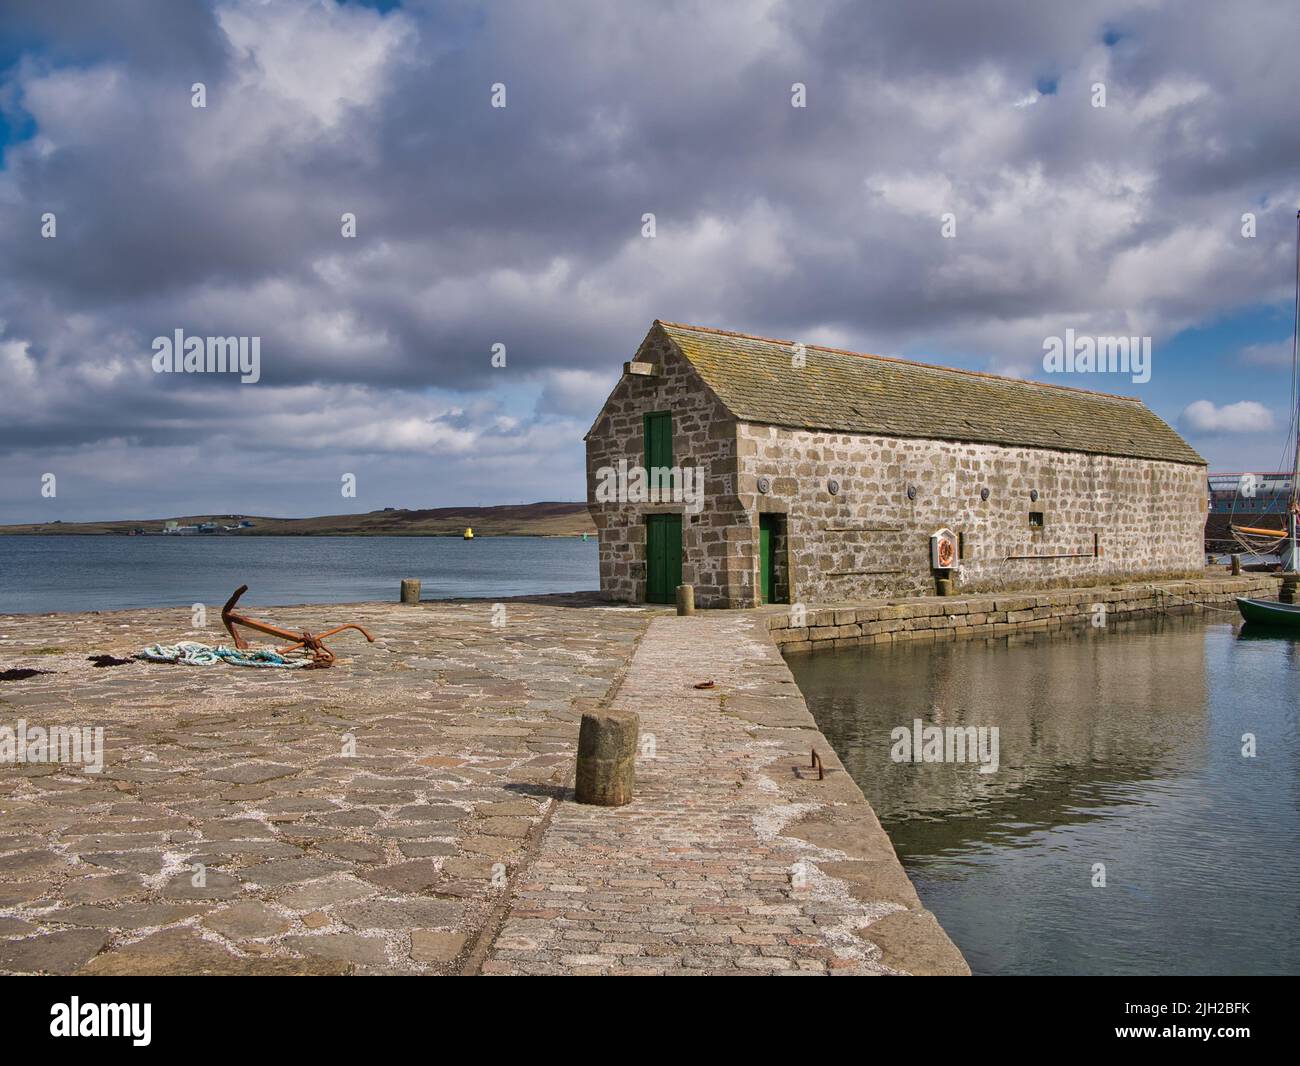 El histórico Pier Storehouse del siglo 19th en Hays Dock, Lerwick, Shetland, ahora restaurado. Un antiguo almacén de dos aguas hecho de piedra arenisca y la clase de la lista Foto de stock